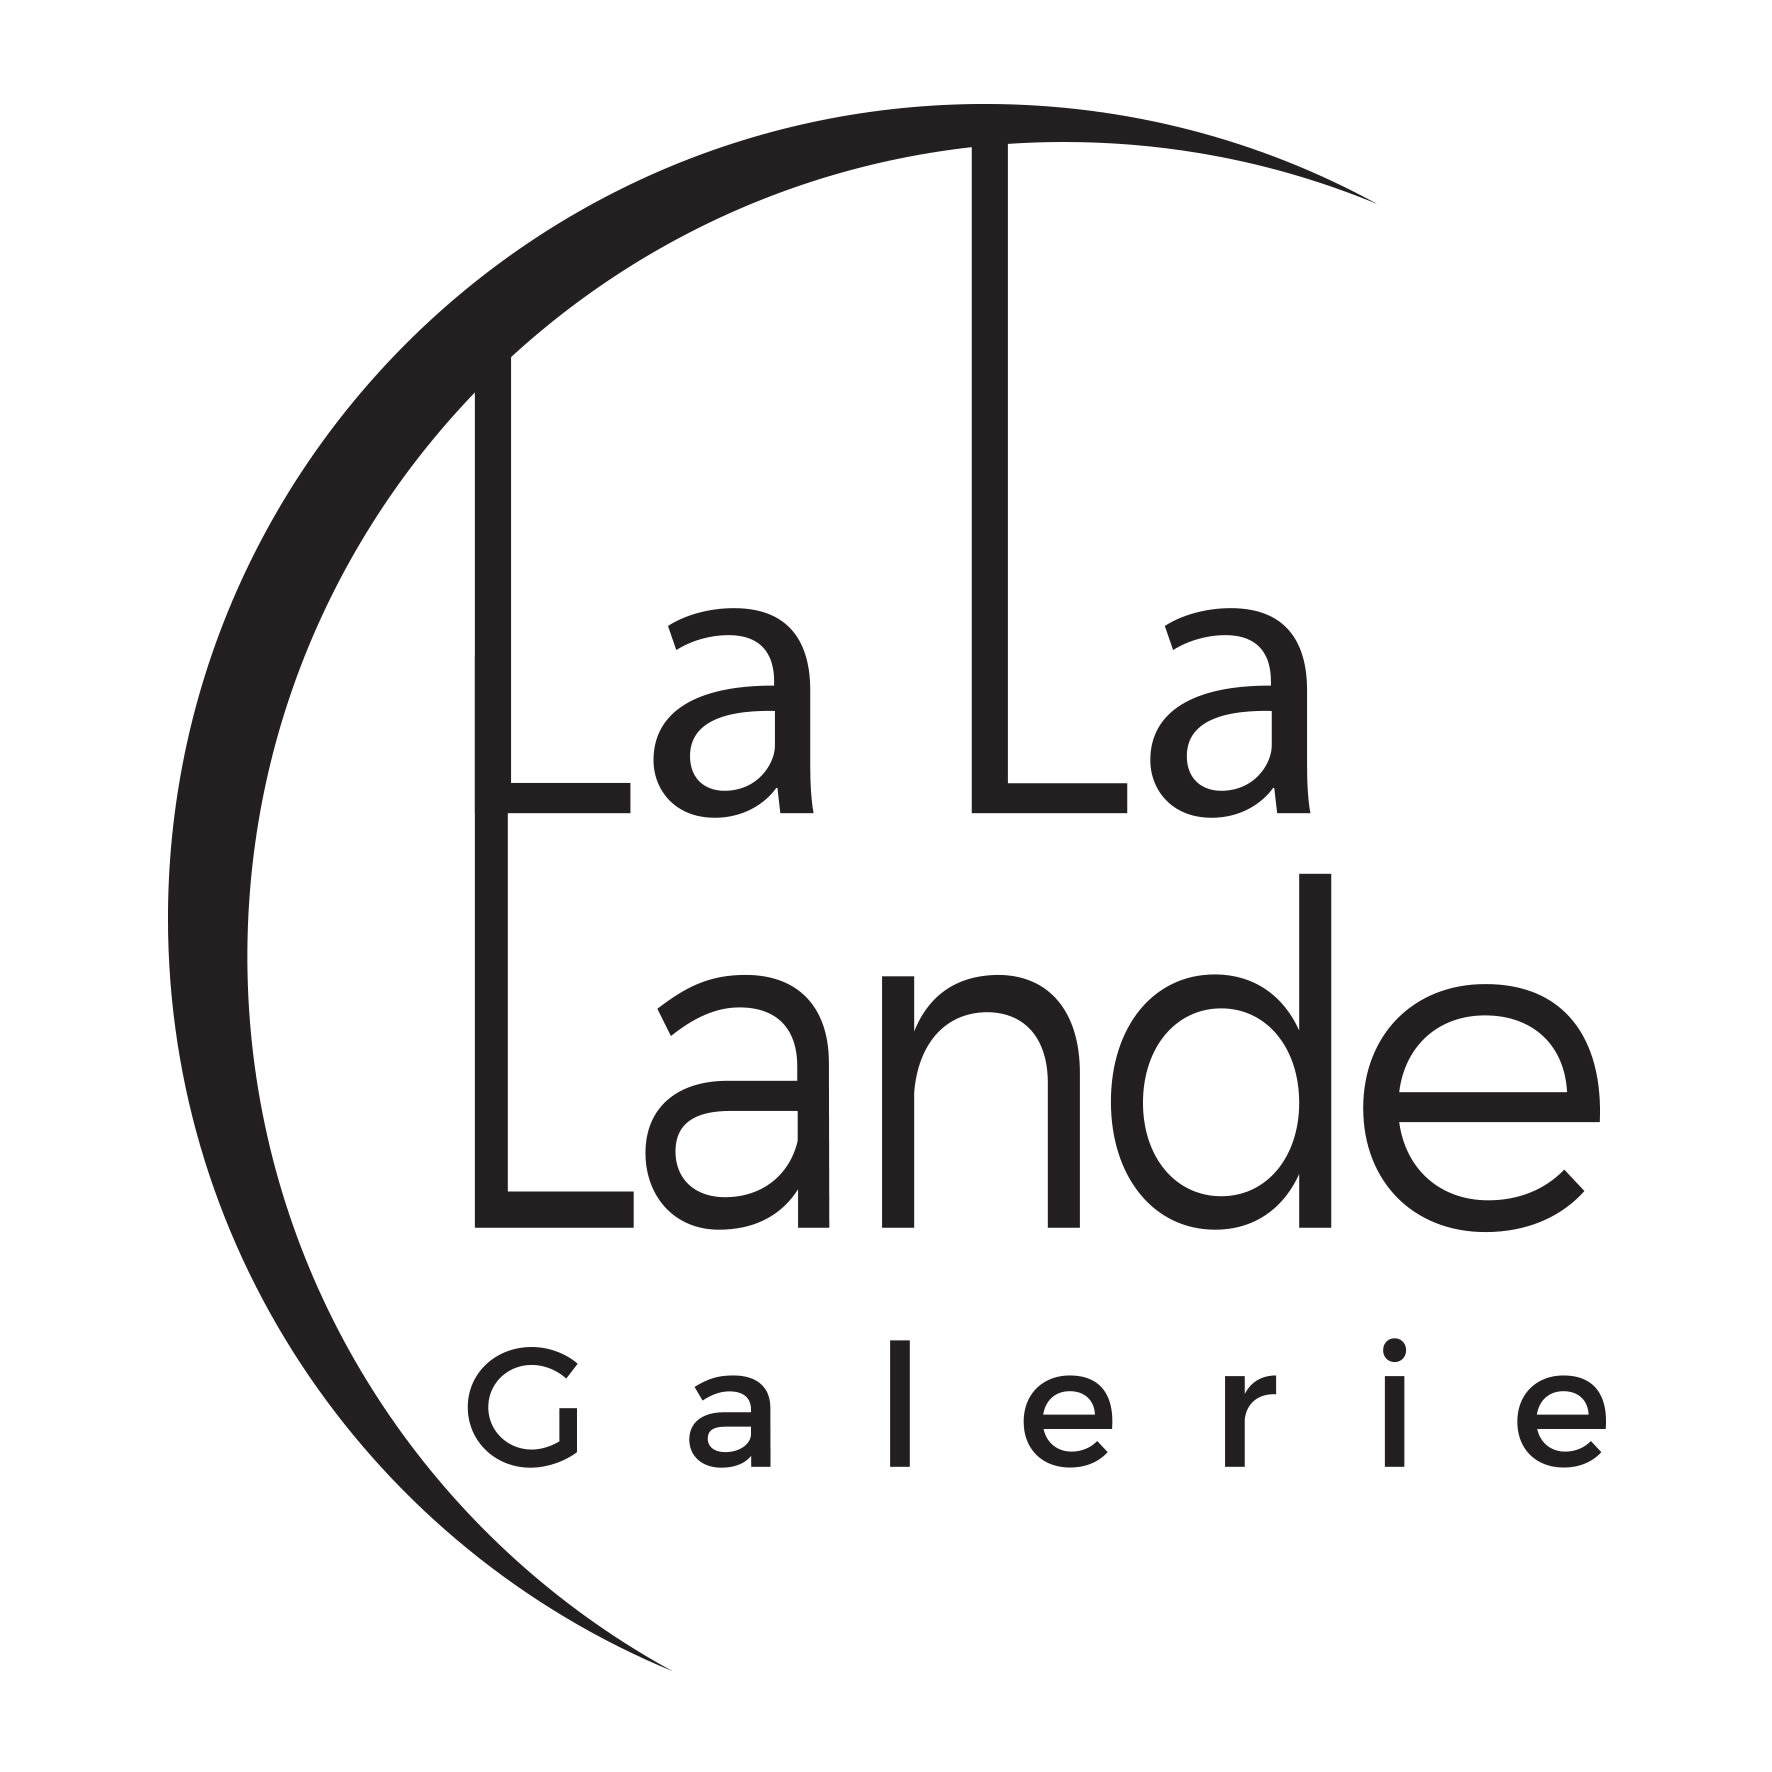 Galerie La La Lande company logo